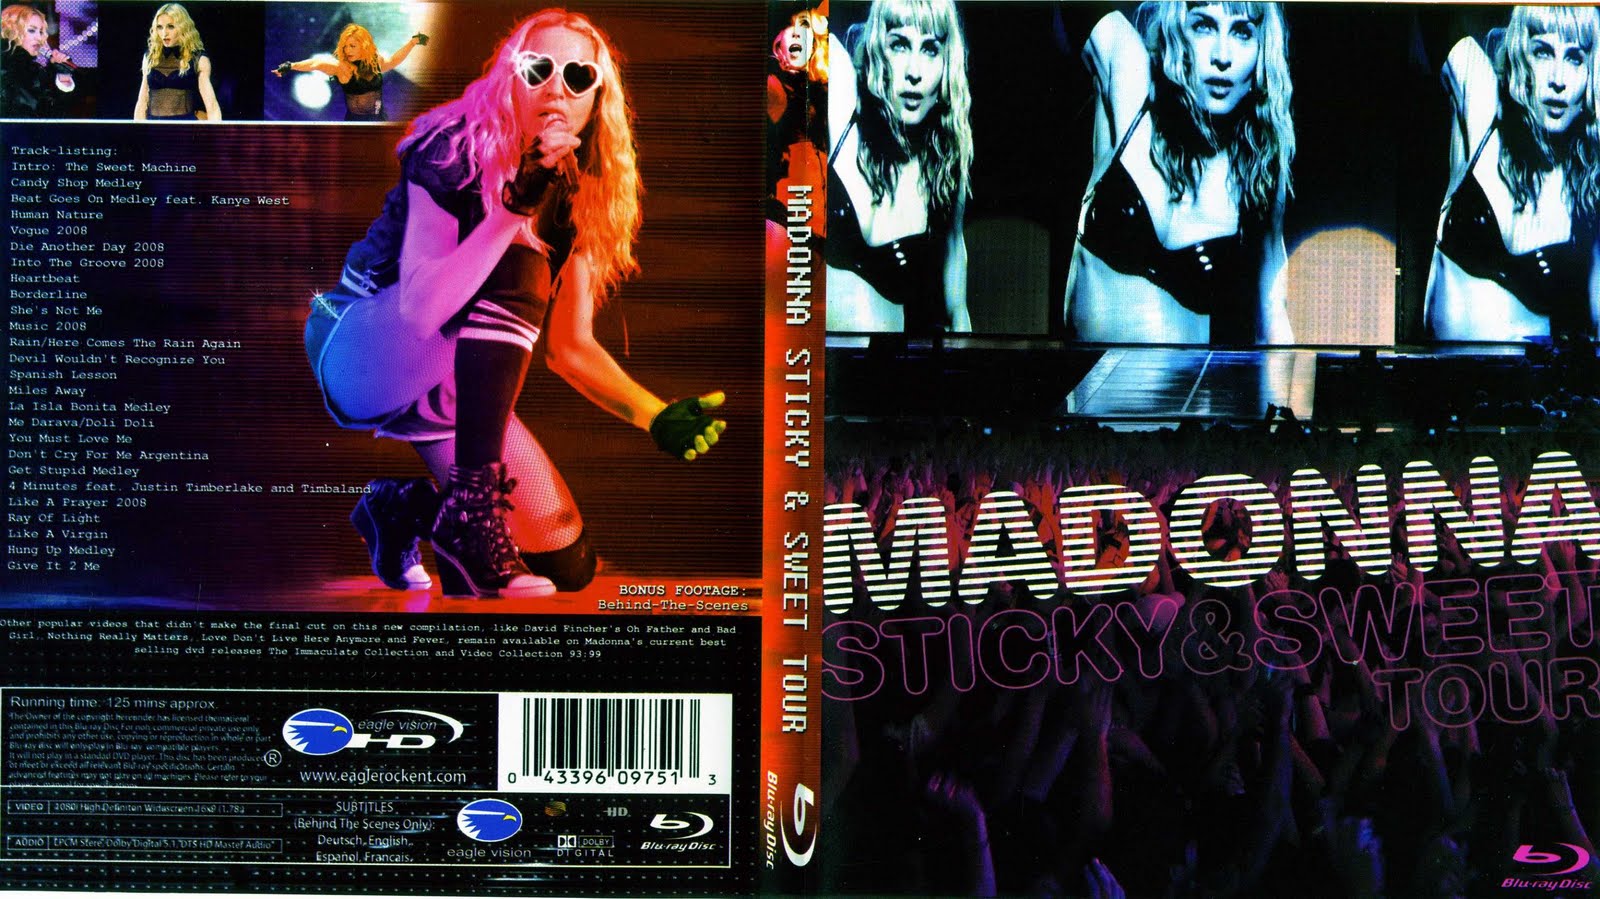 http://2.bp.blogspot.com/_hy0JBPNPpGc/TIQcZjL1XfI/AAAAAAAACYE/Ta2dHTH3mbs/s1600/Madonna_sticky_001.jpg